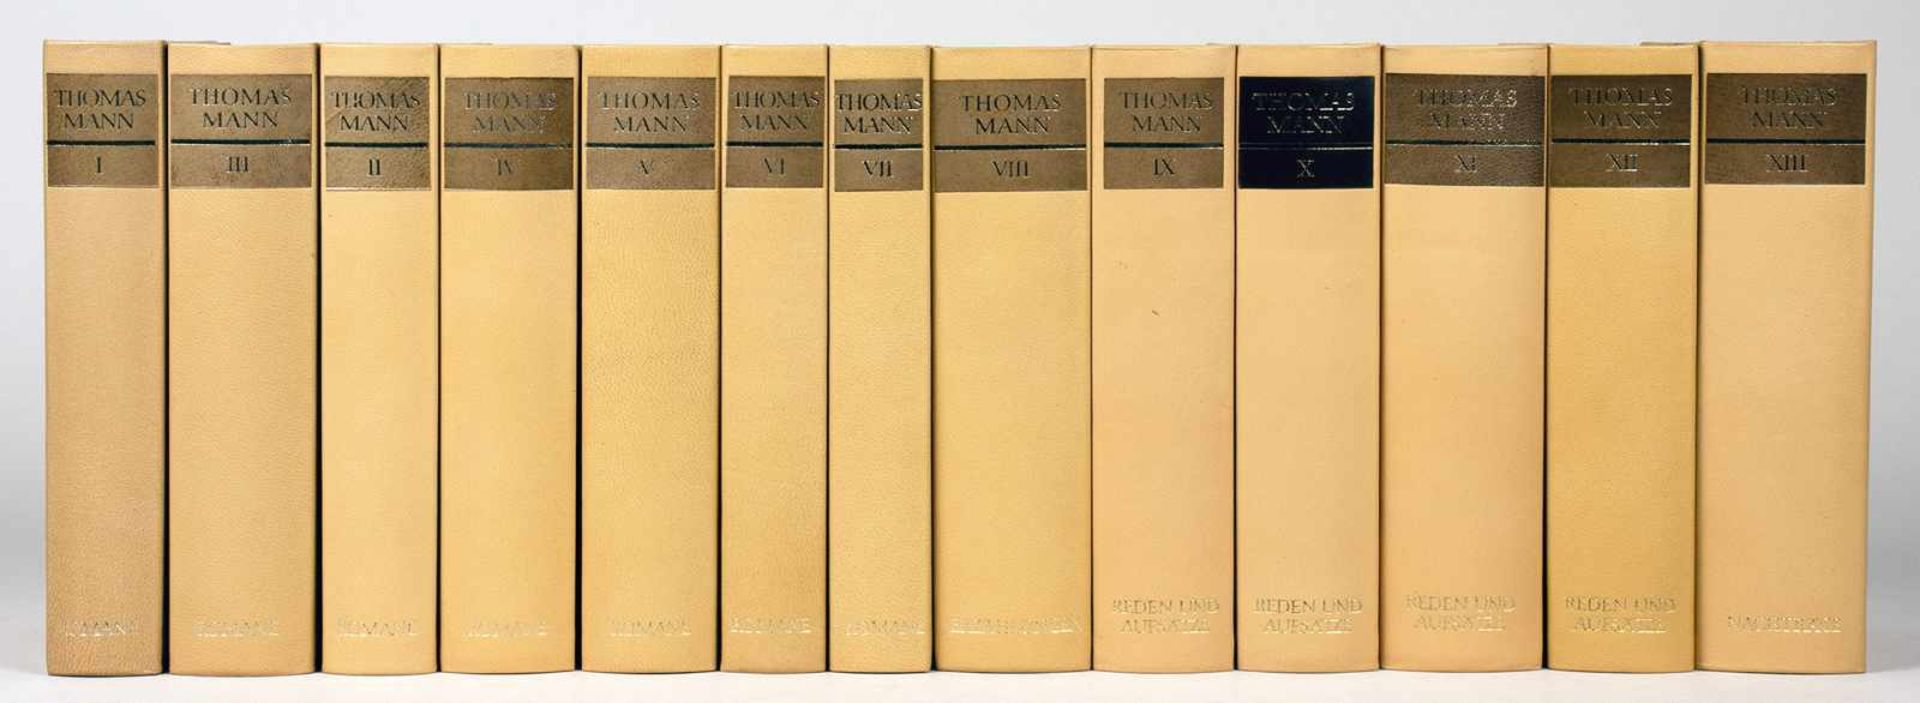 Thomas Mann. Gesammelte Werke in dreizehn Bänden. Zweite, durchgesehene Auflage. Frankfurt am